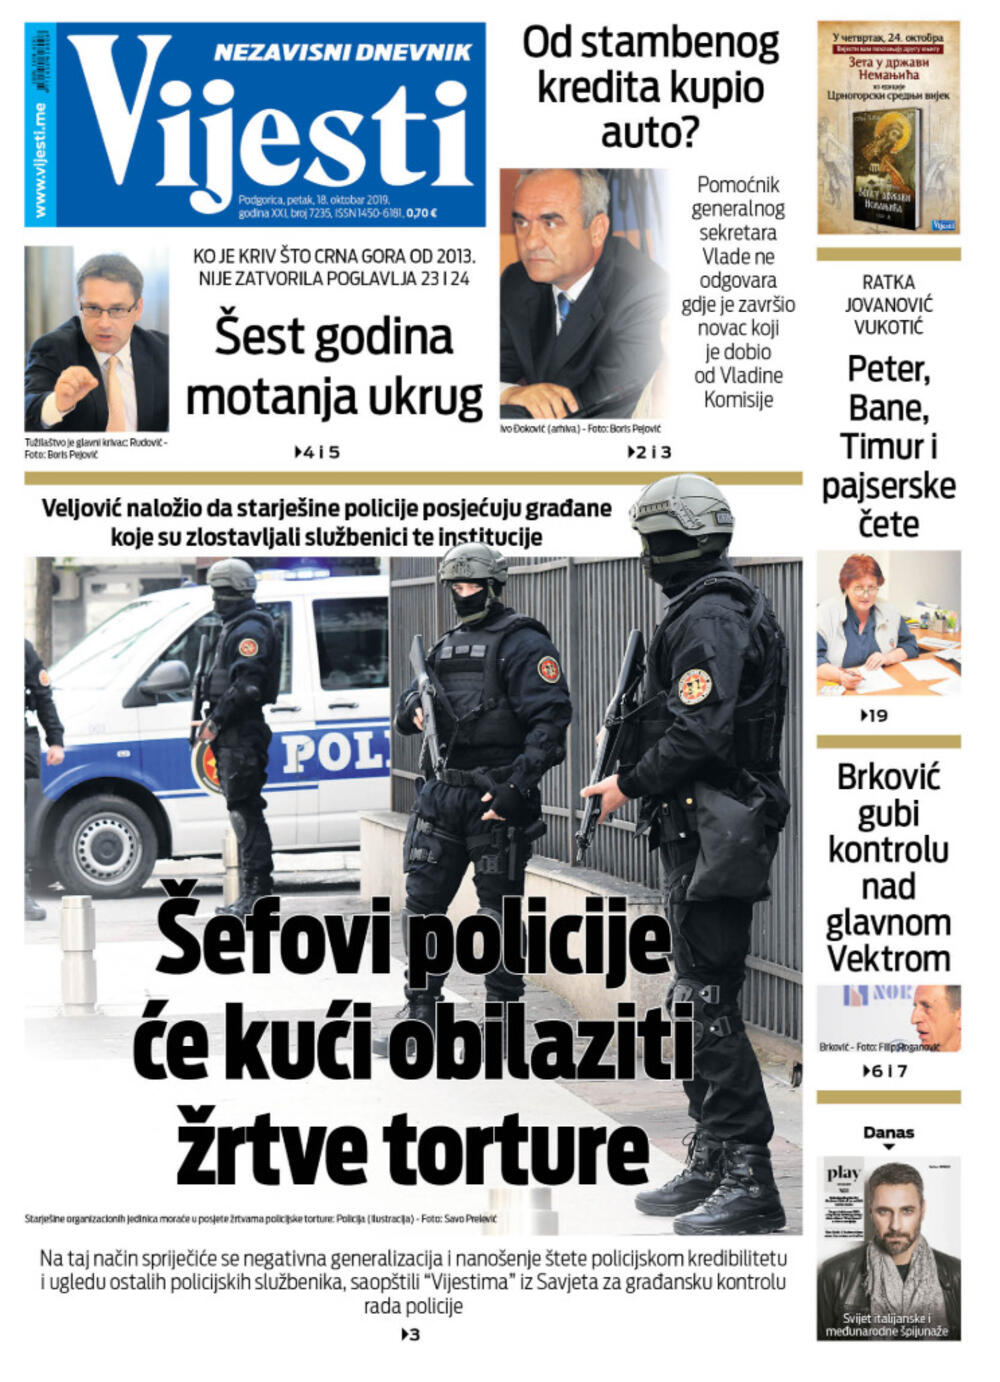 Naslovna strana "Vijesti" za 18. oktobar 2019.